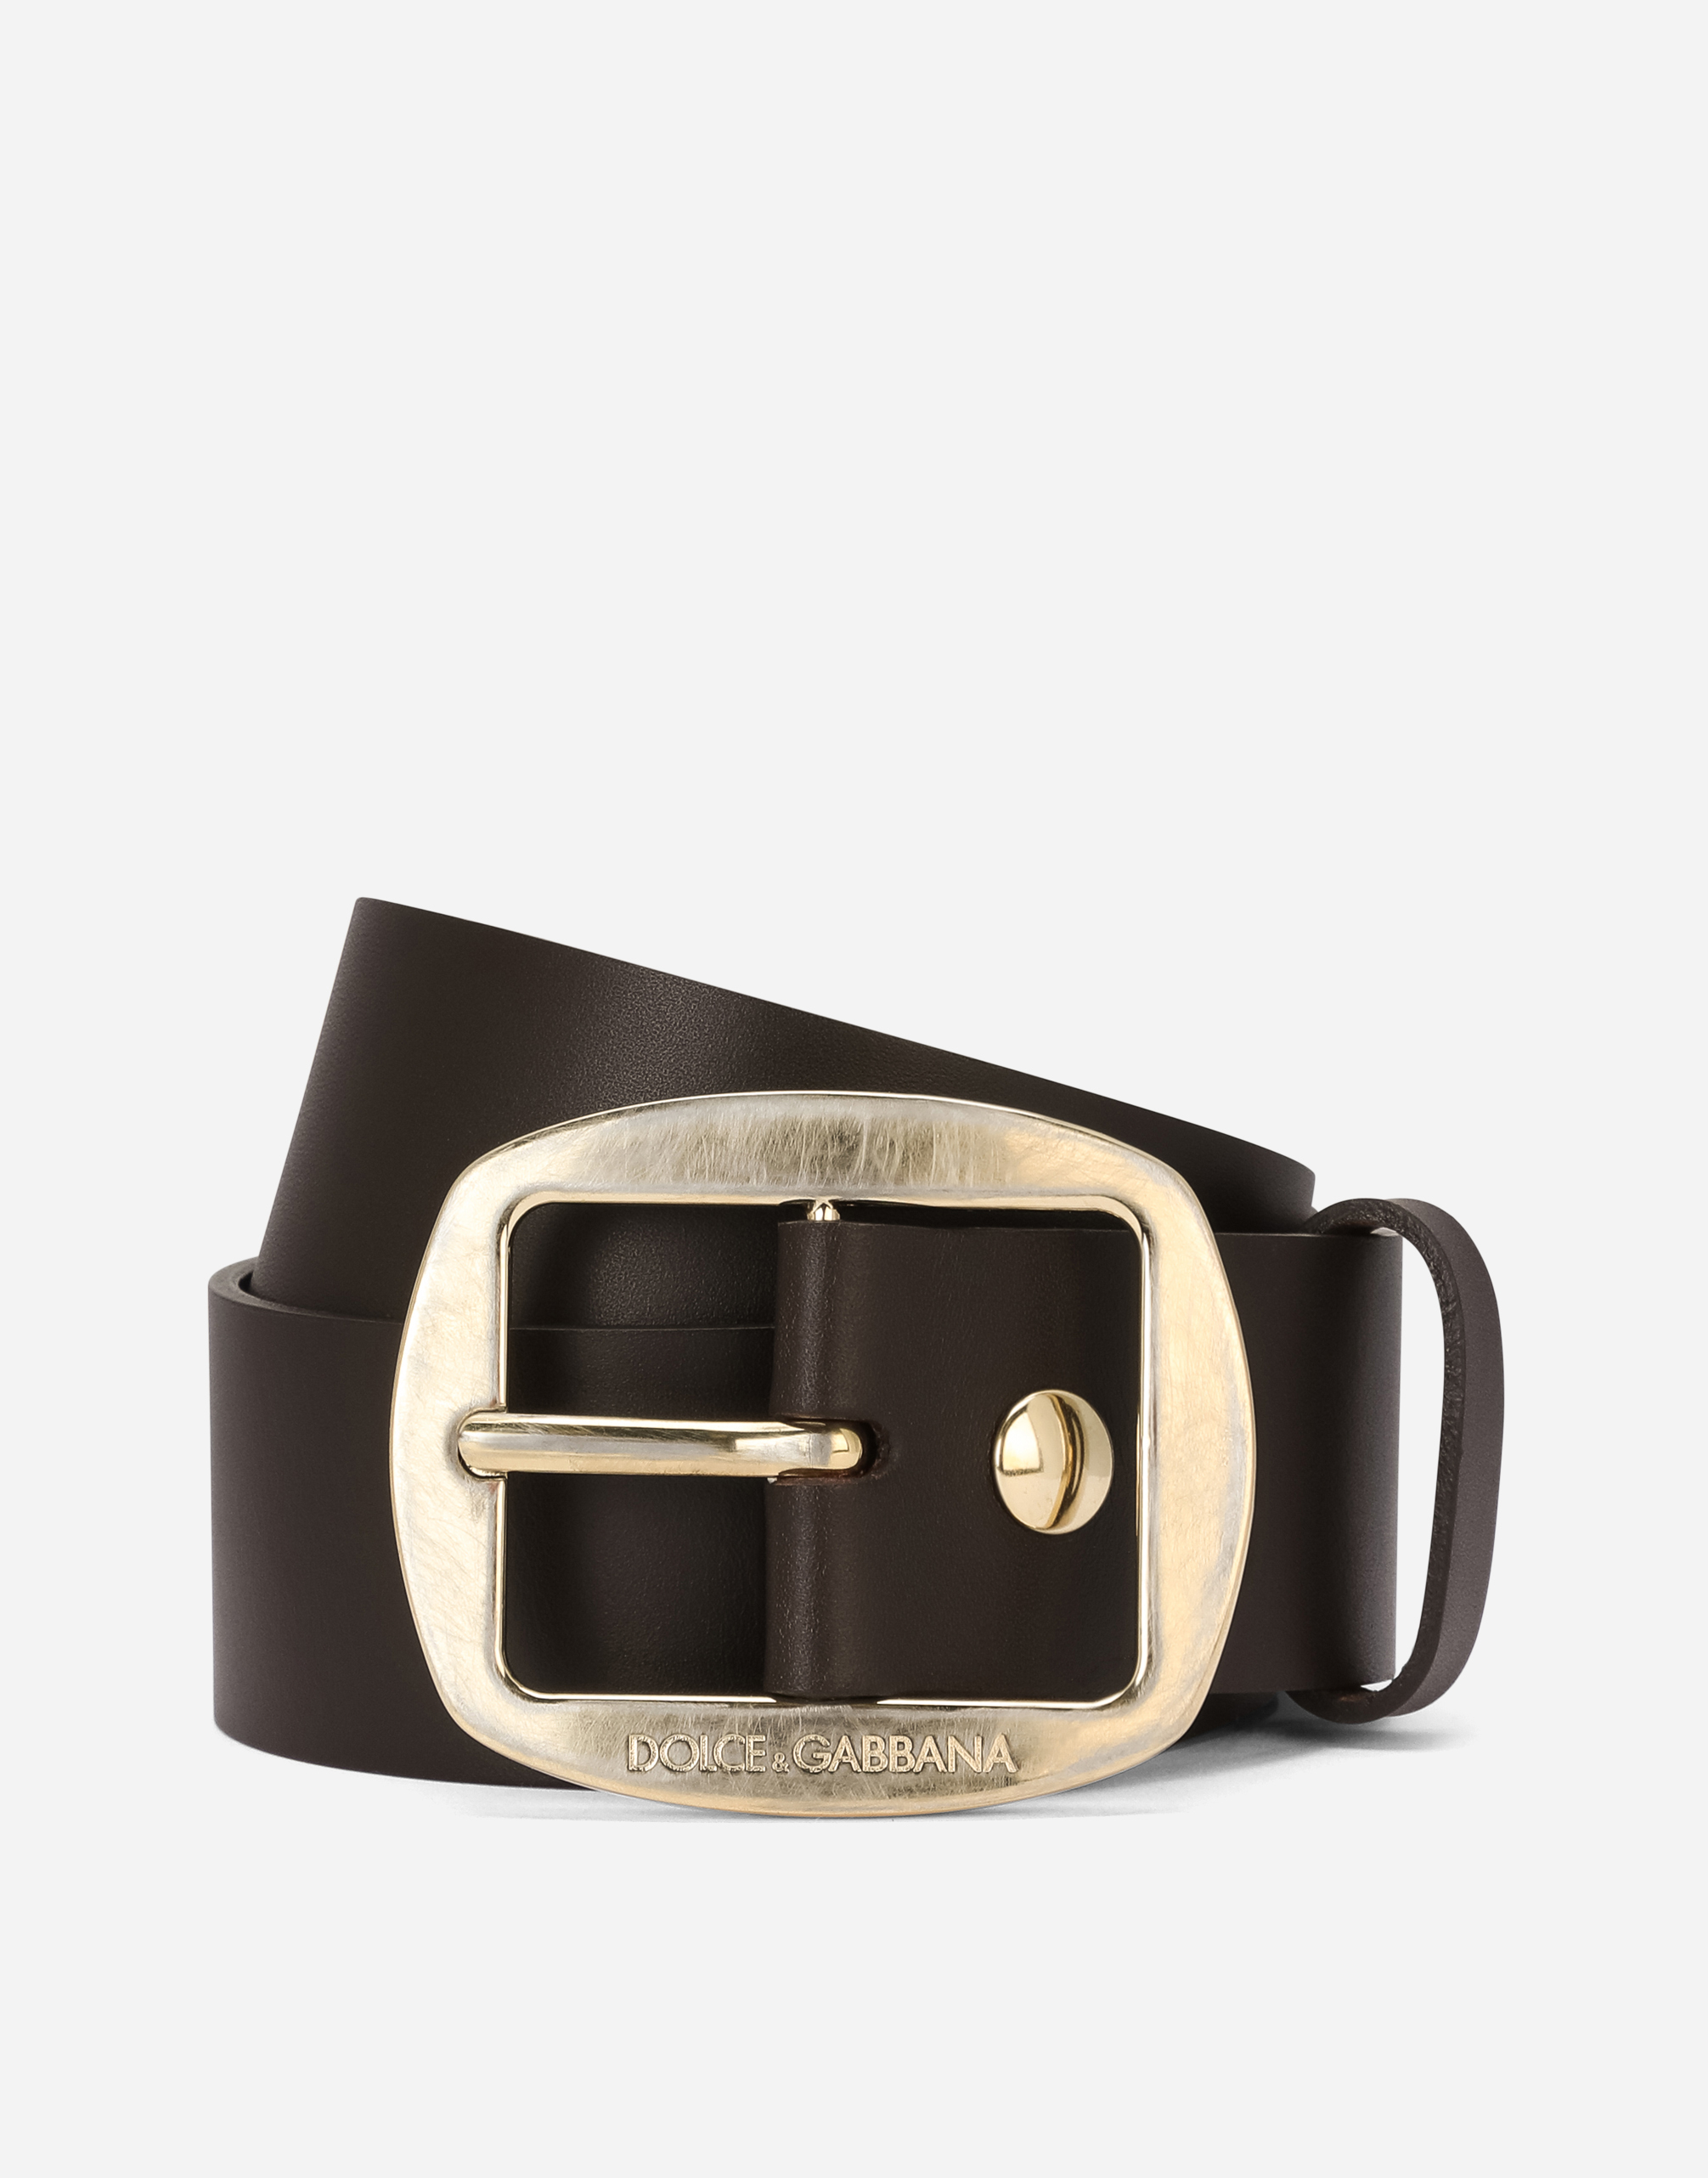 Dolce & Gabbana Calfskin Belt In Brown